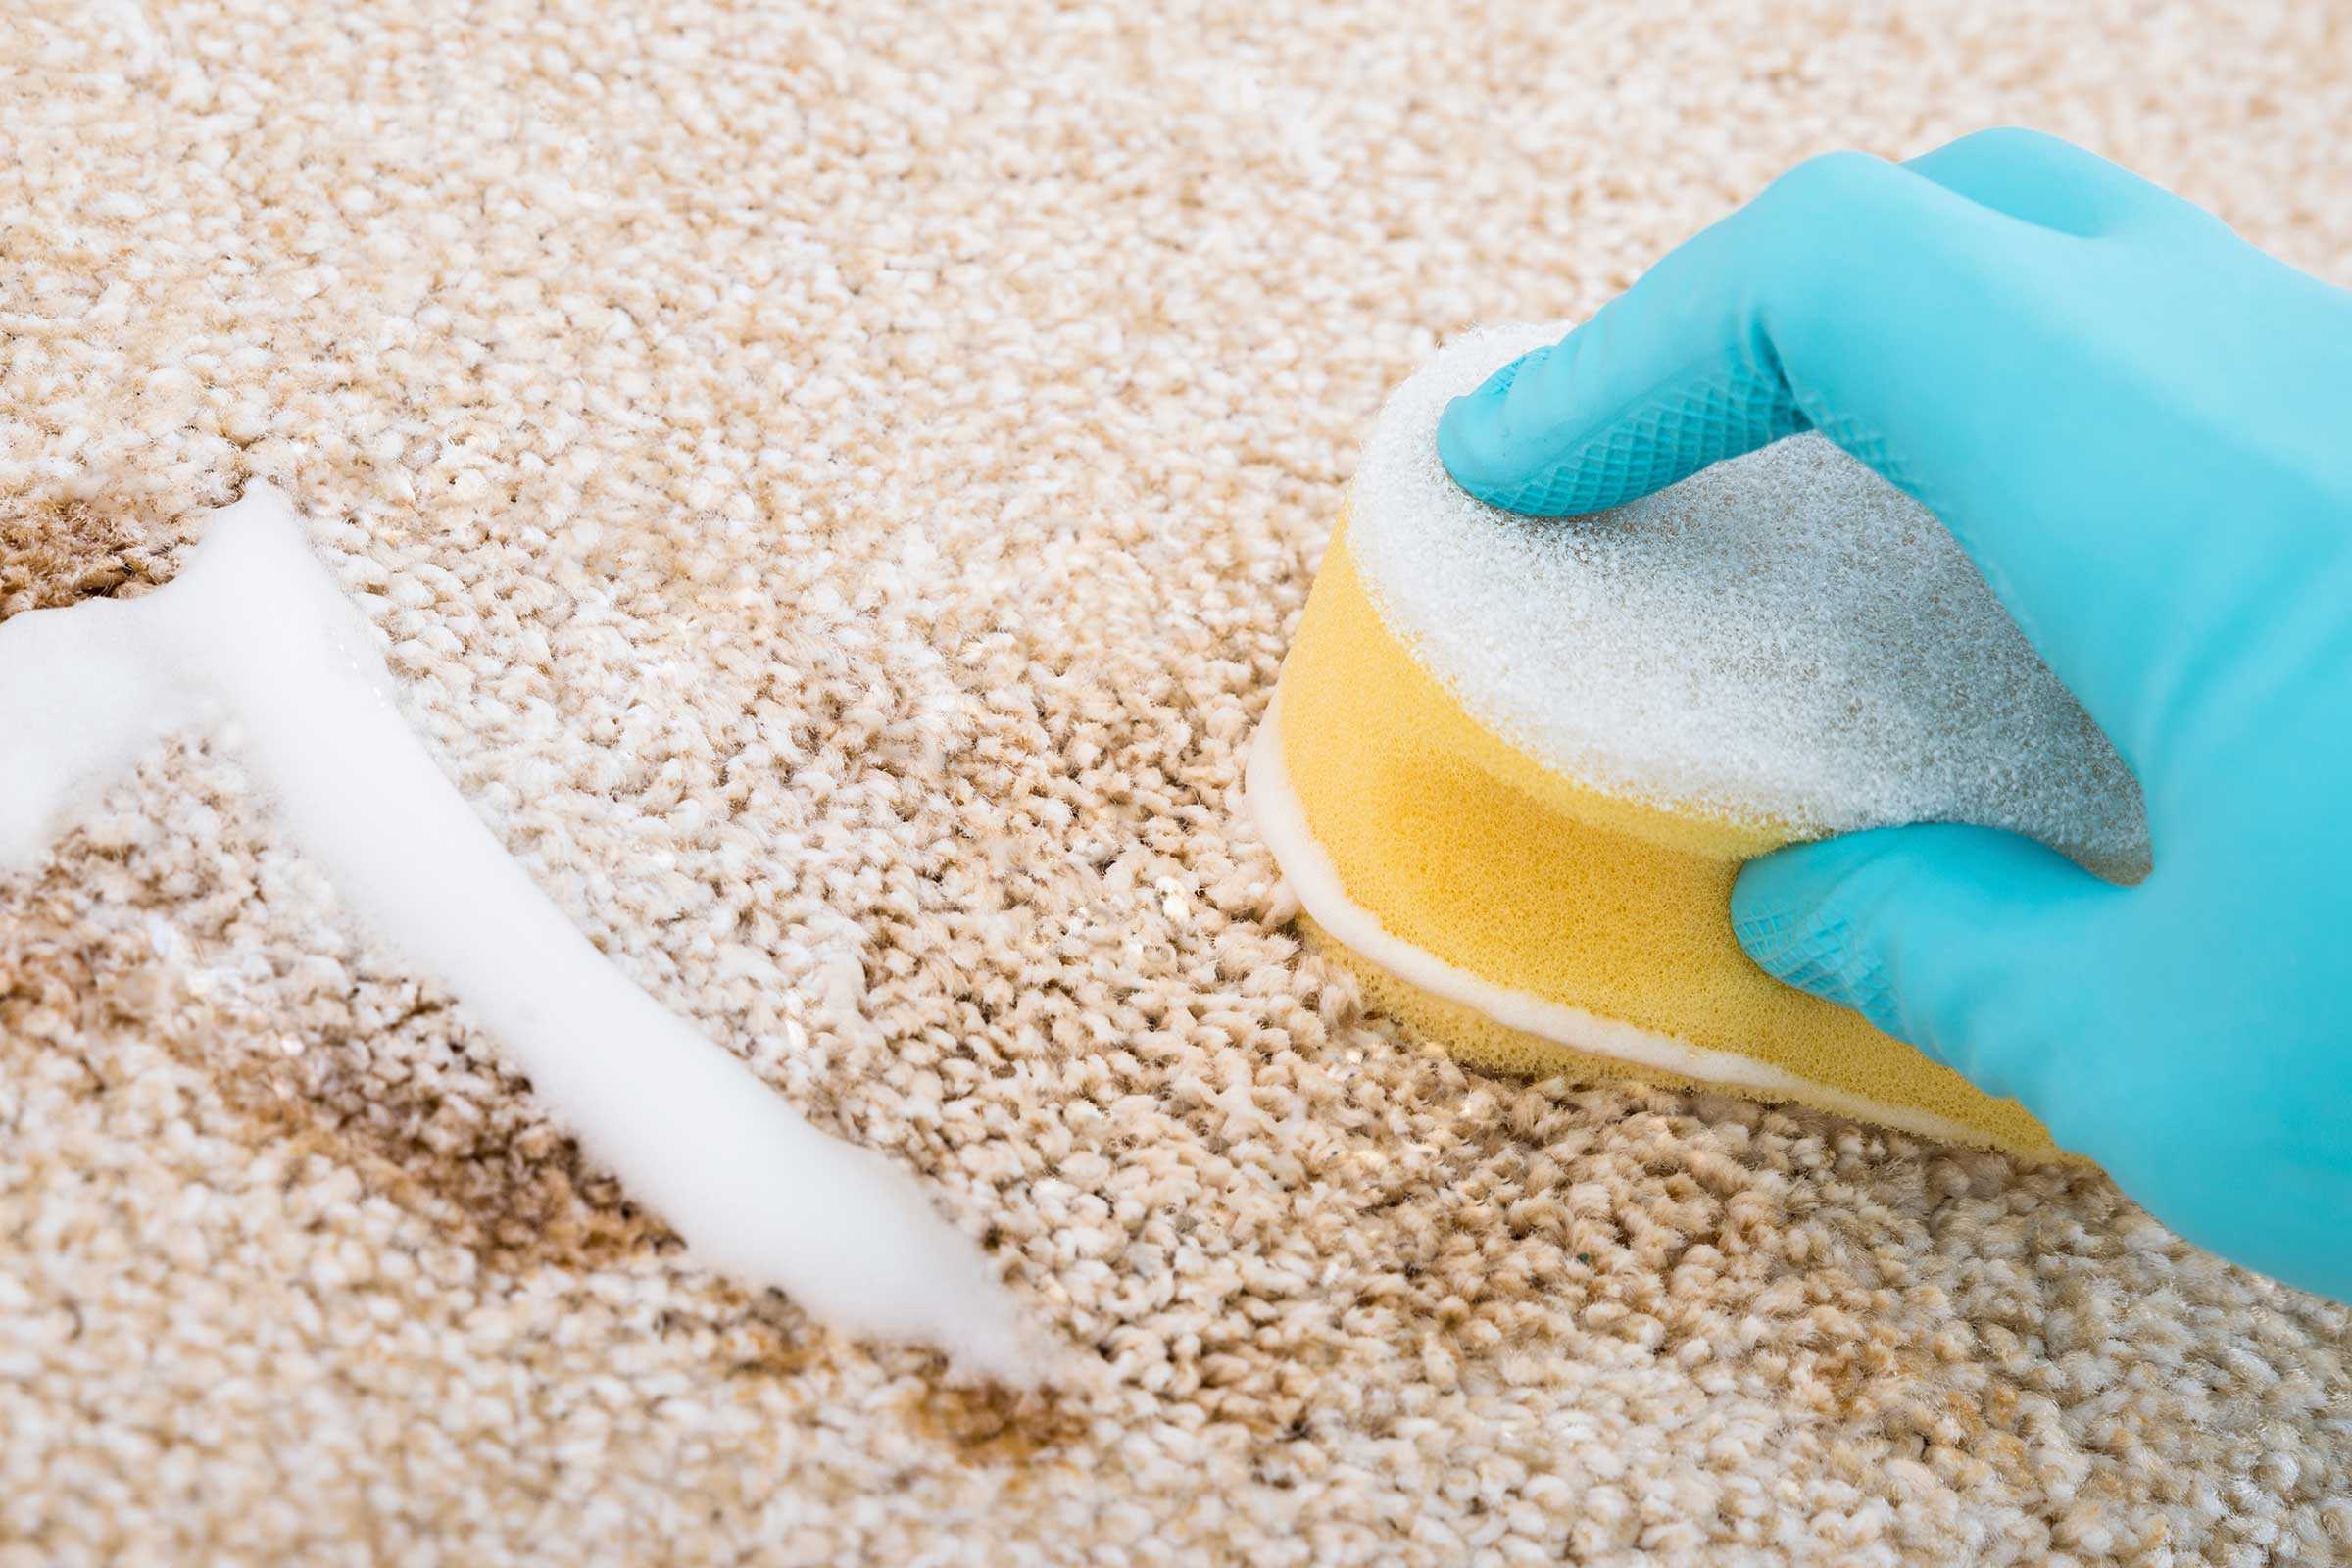 Ваниш для ковров: как правильно пользоваться спреем, пеной, шампунем и порошком для чистки паласов